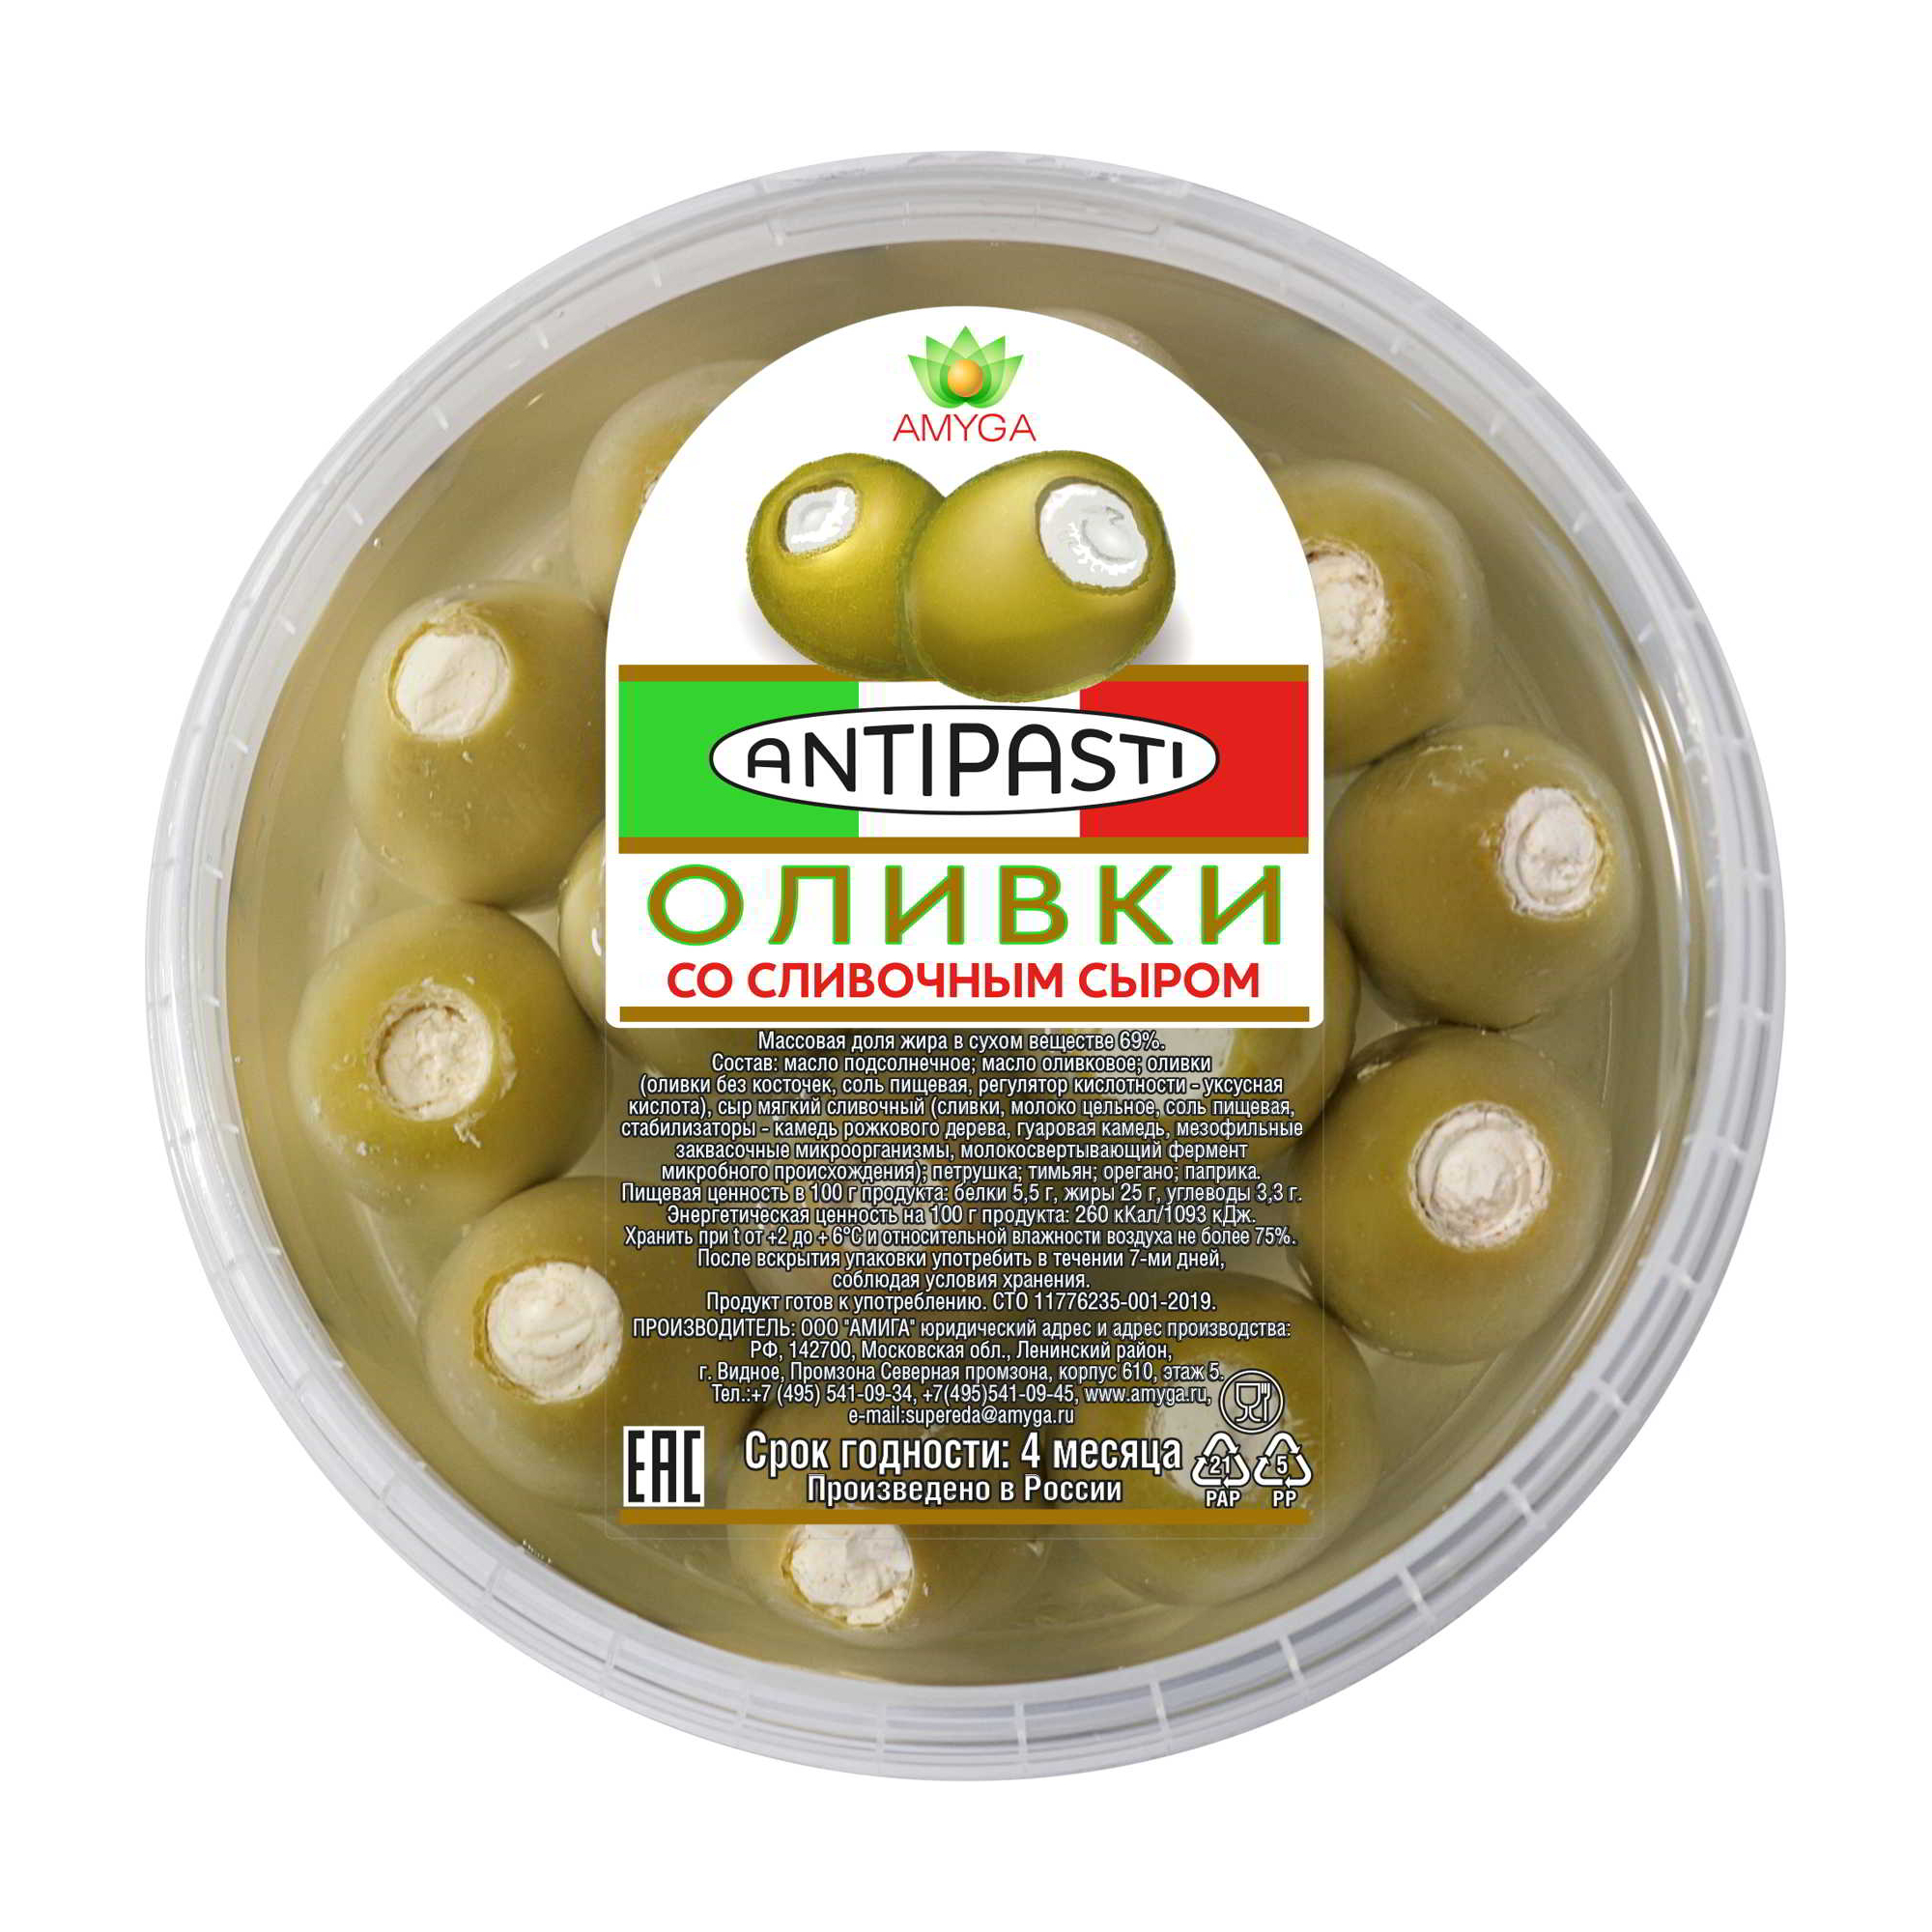 Фаршированные оливки Amyga со сливочным сыром 250 г